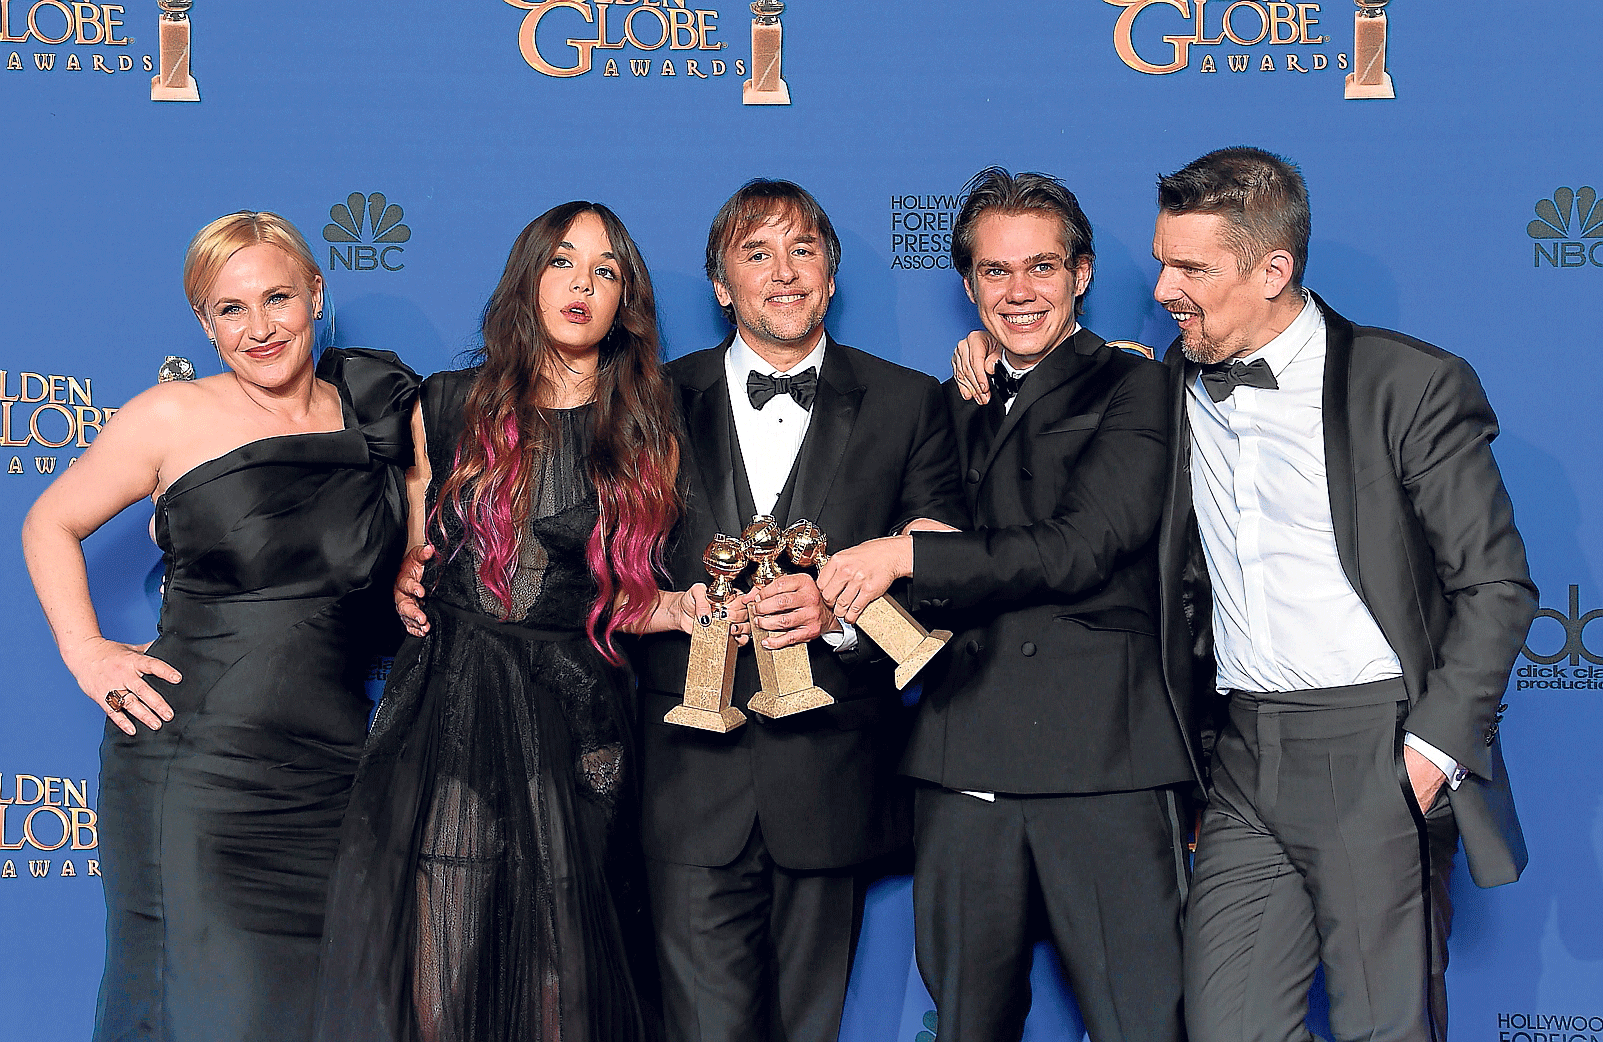 El director Richard Linklater, en el centro, con el reparto de 'Boyhood', que ganó tres Globos de Oro, entre ellos, el de mejor drama